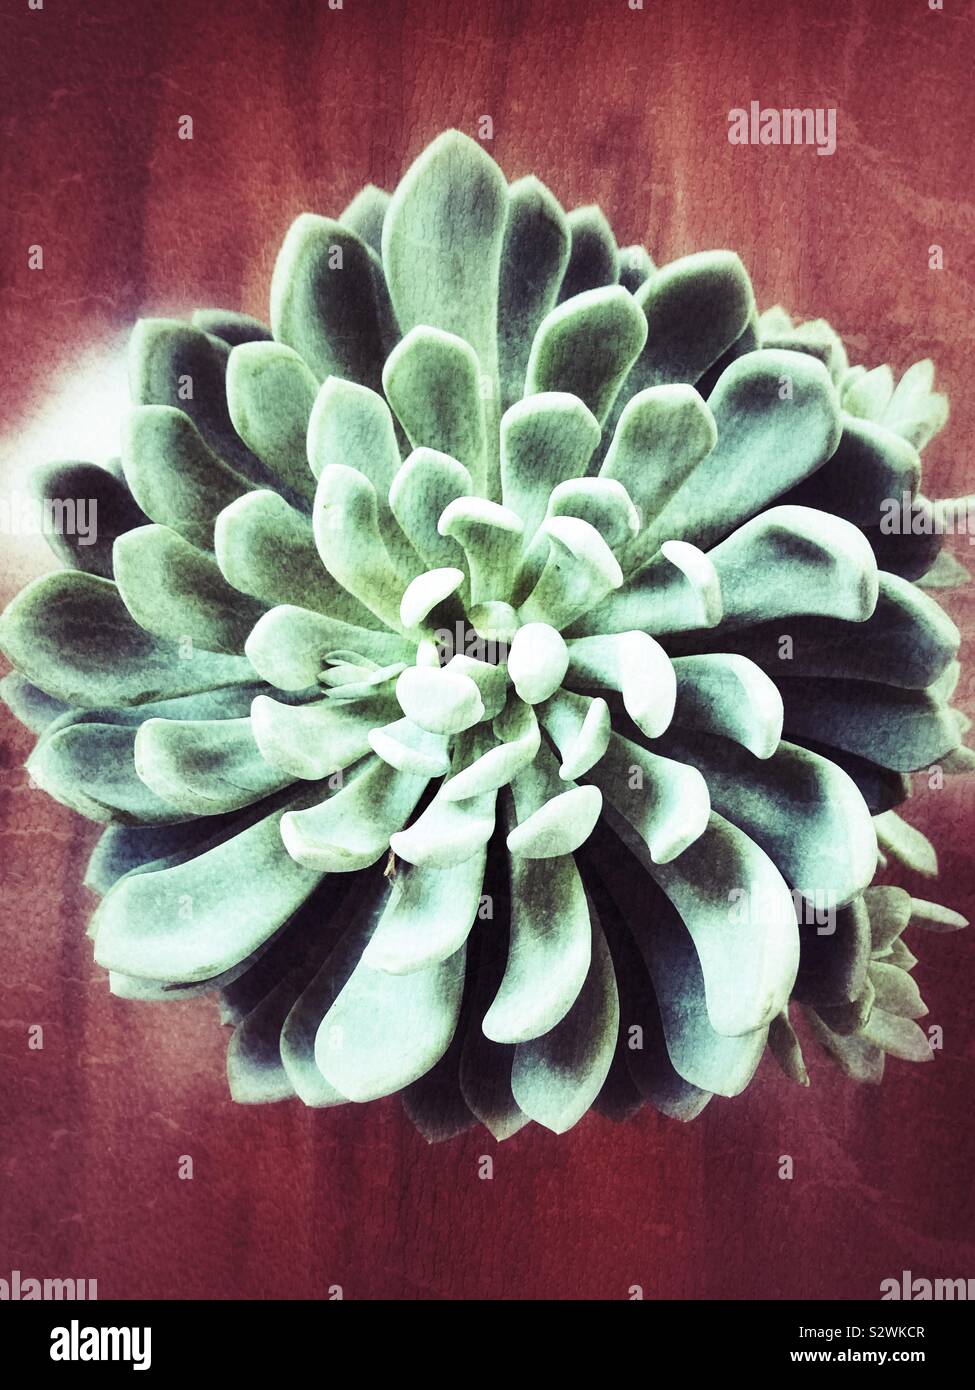 Green plante succulente avec texture grunge Banque D'Images